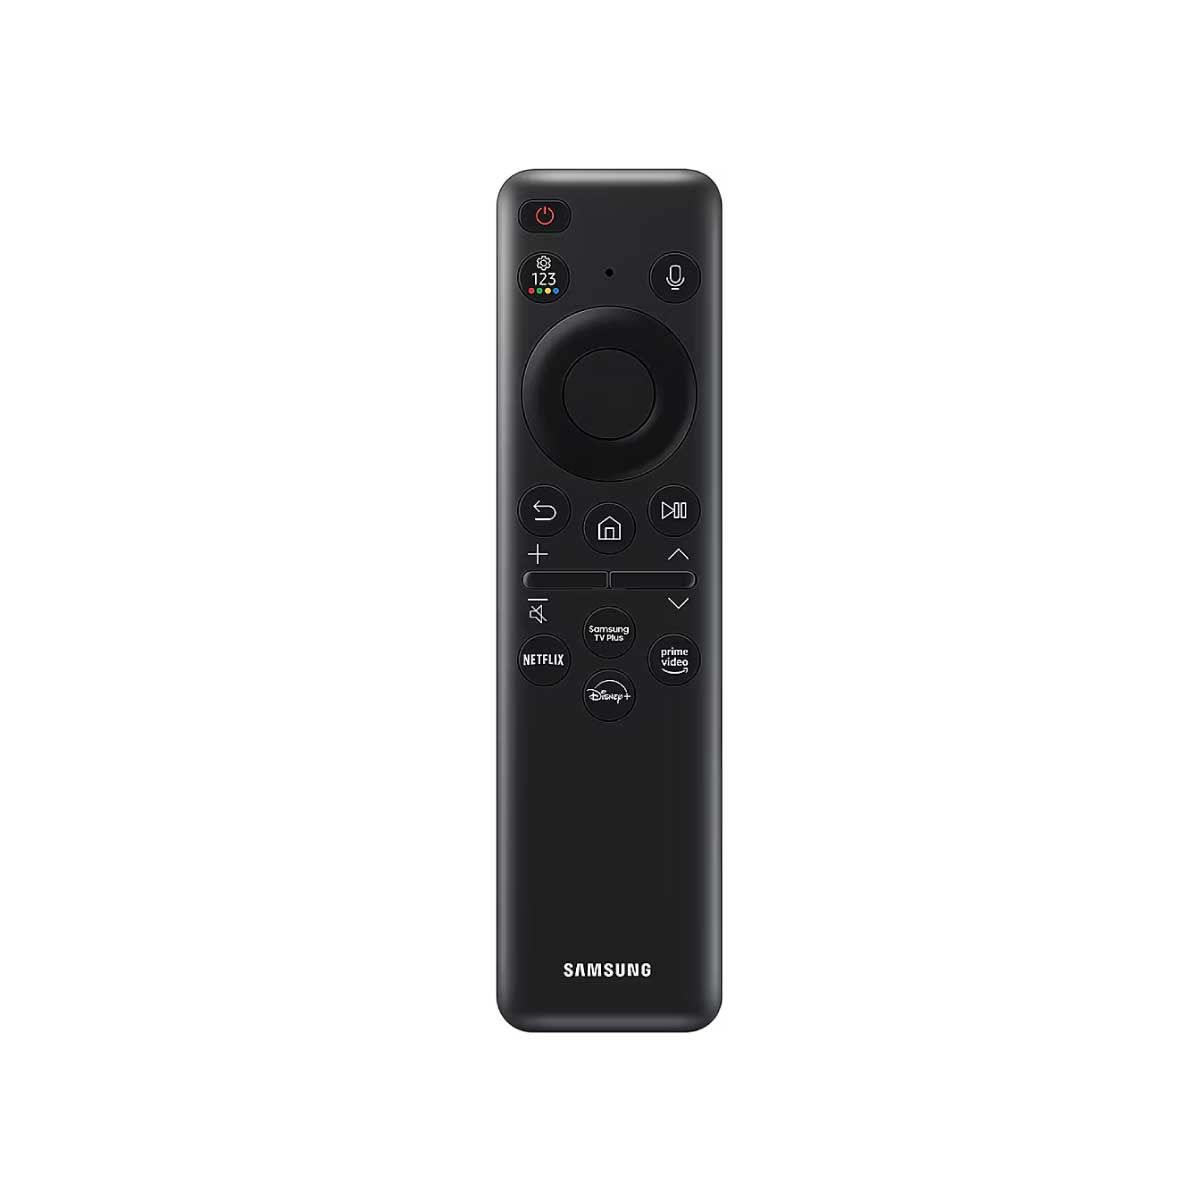 SAMSUNG LED Crystal UHD Smart TV 4K รุ่น UA65DU7700KXXT Smart One Remote ขนาด 65 นิ้ว